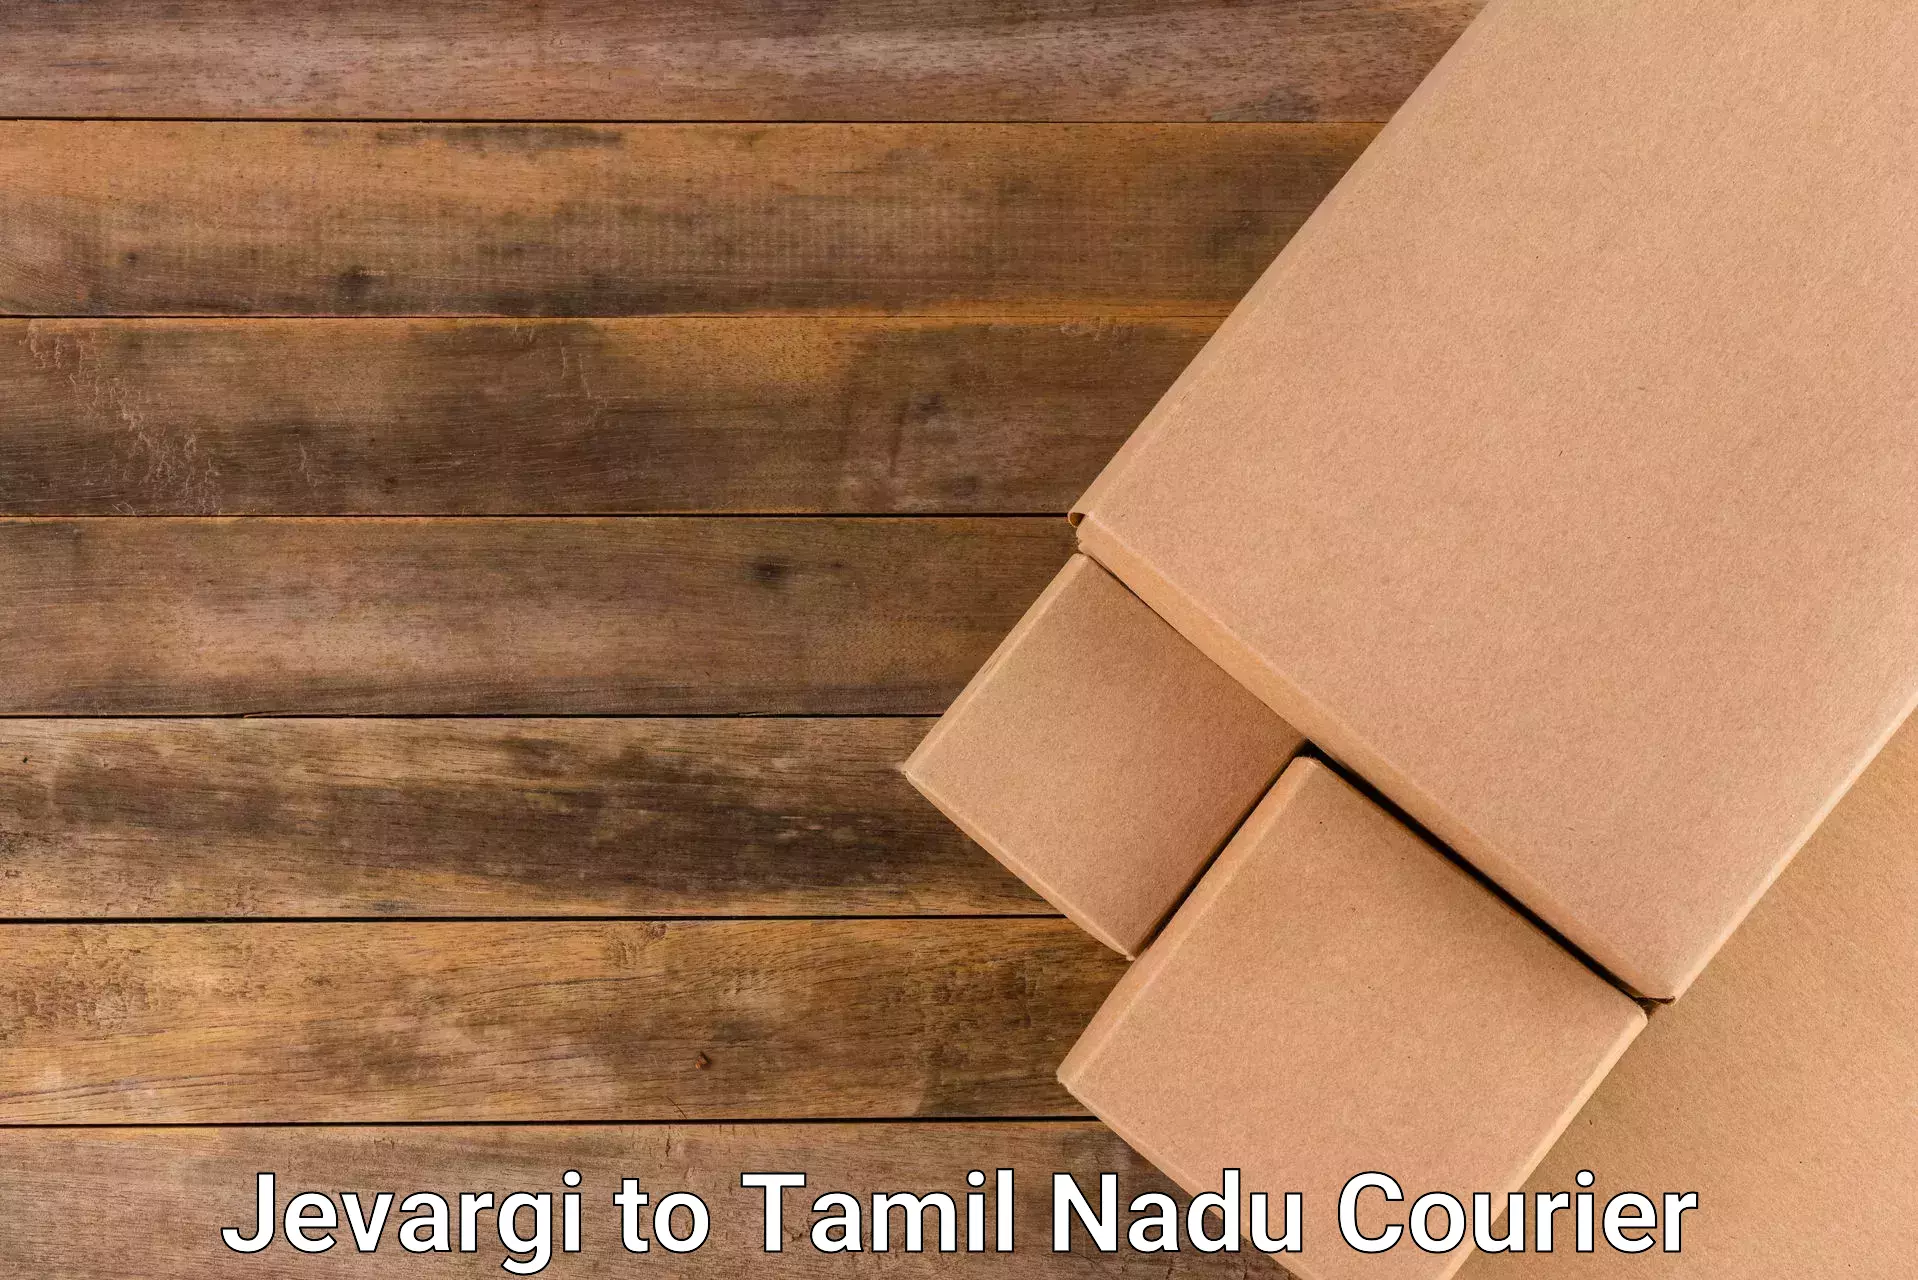 Efficient parcel delivery Jevargi to Tiruppur